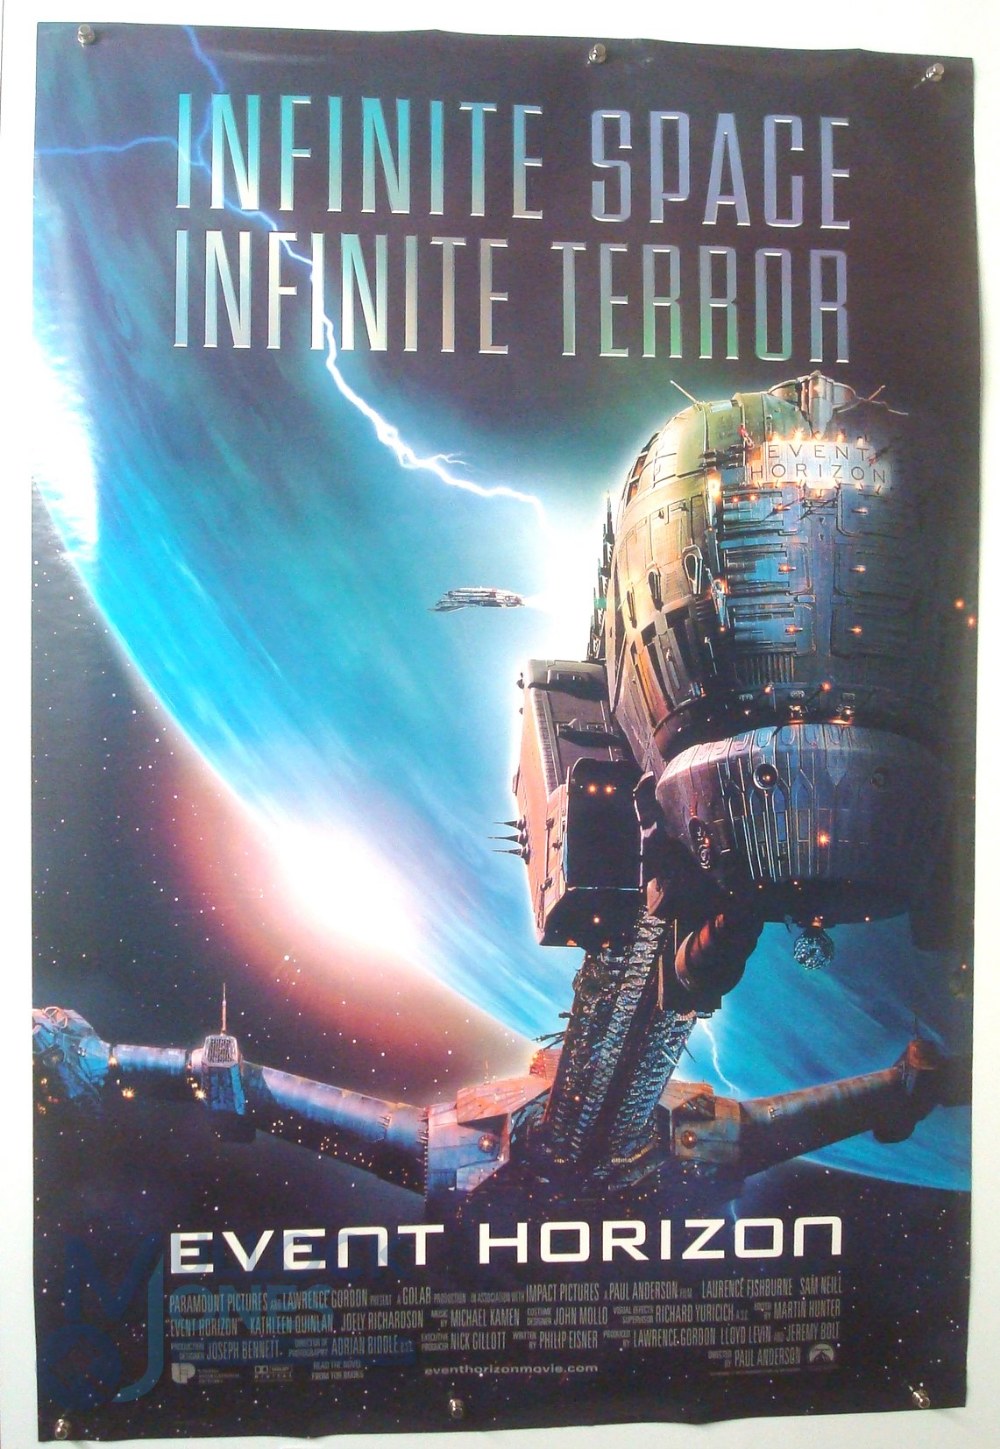 Original Movie/Film Poster - 1997 Speed 2 Cruise Control, 1997 Event Horizon, 2001 Proof of Life - - Bild 2 aus 3